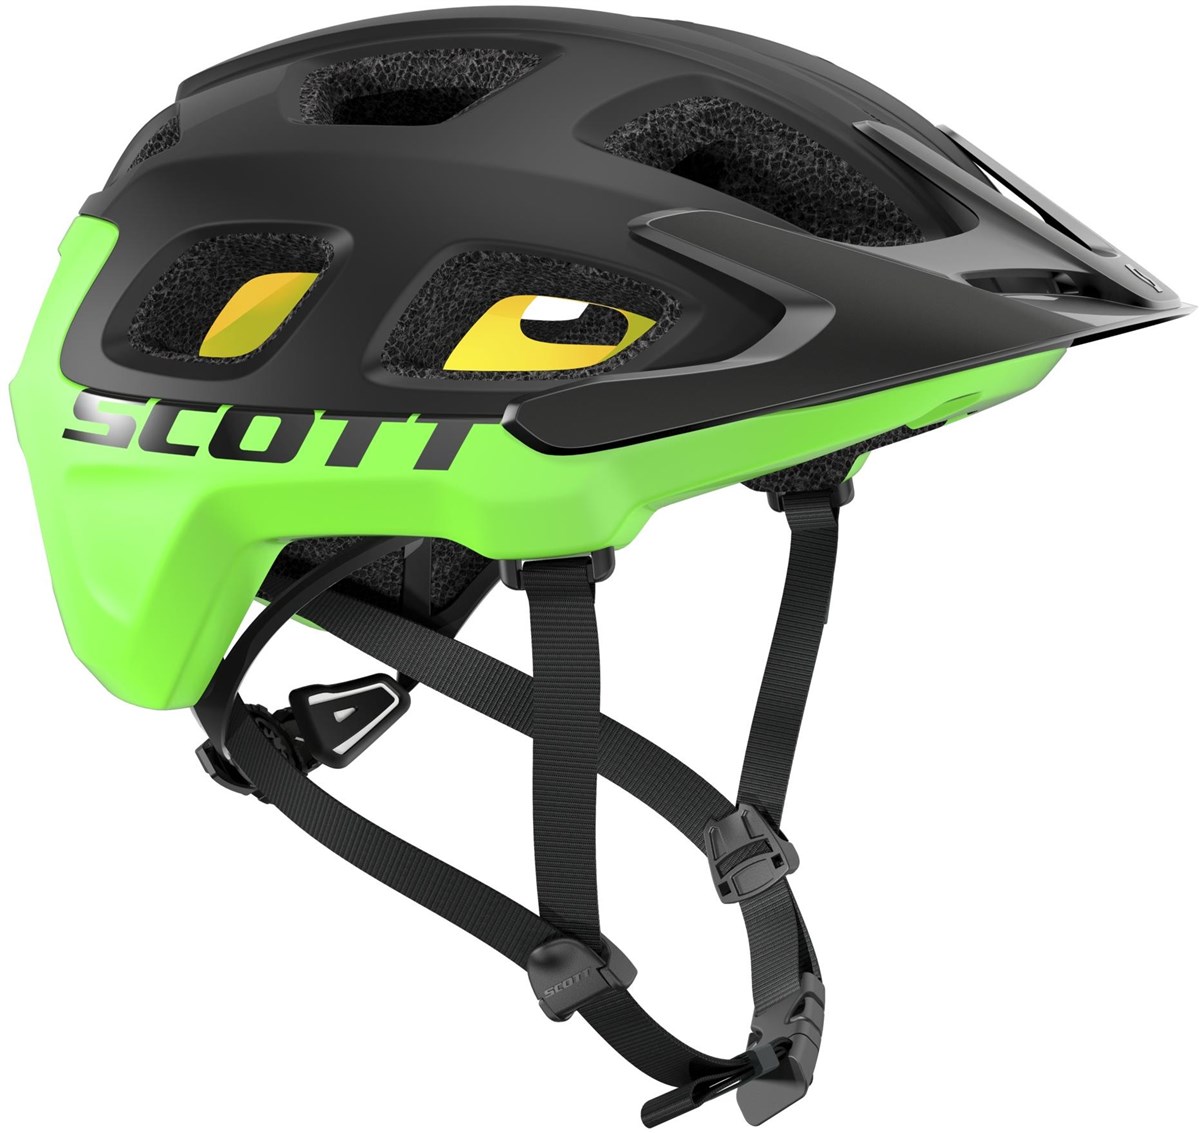 Scott Vivo Plus MTB Cycling Helmet